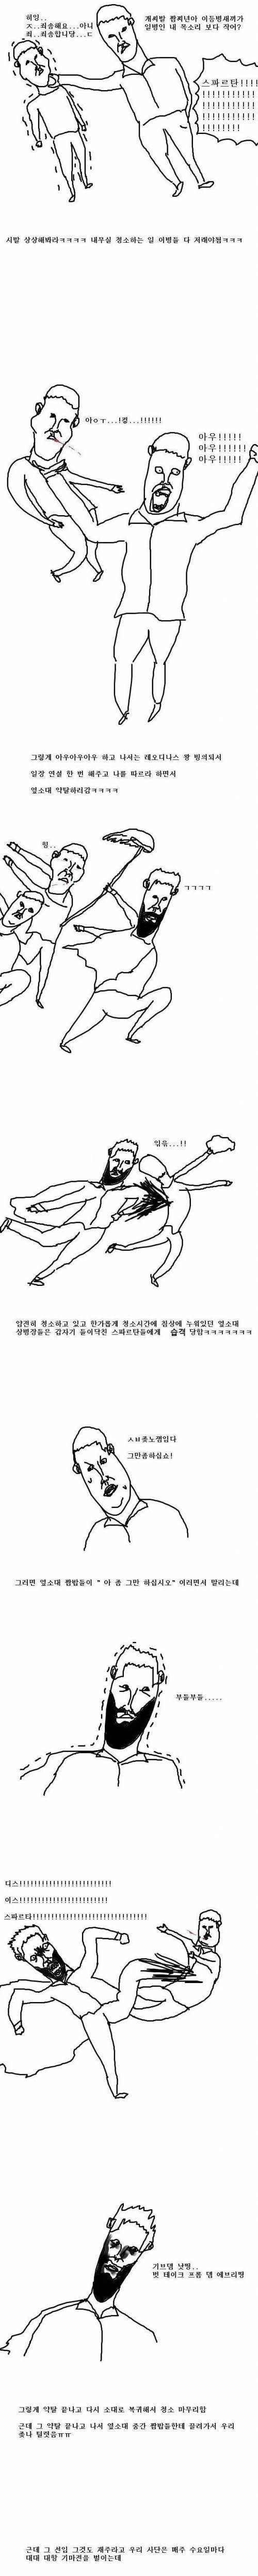 [스압] 300영화 빠돌이였던 선임 만화..jpg